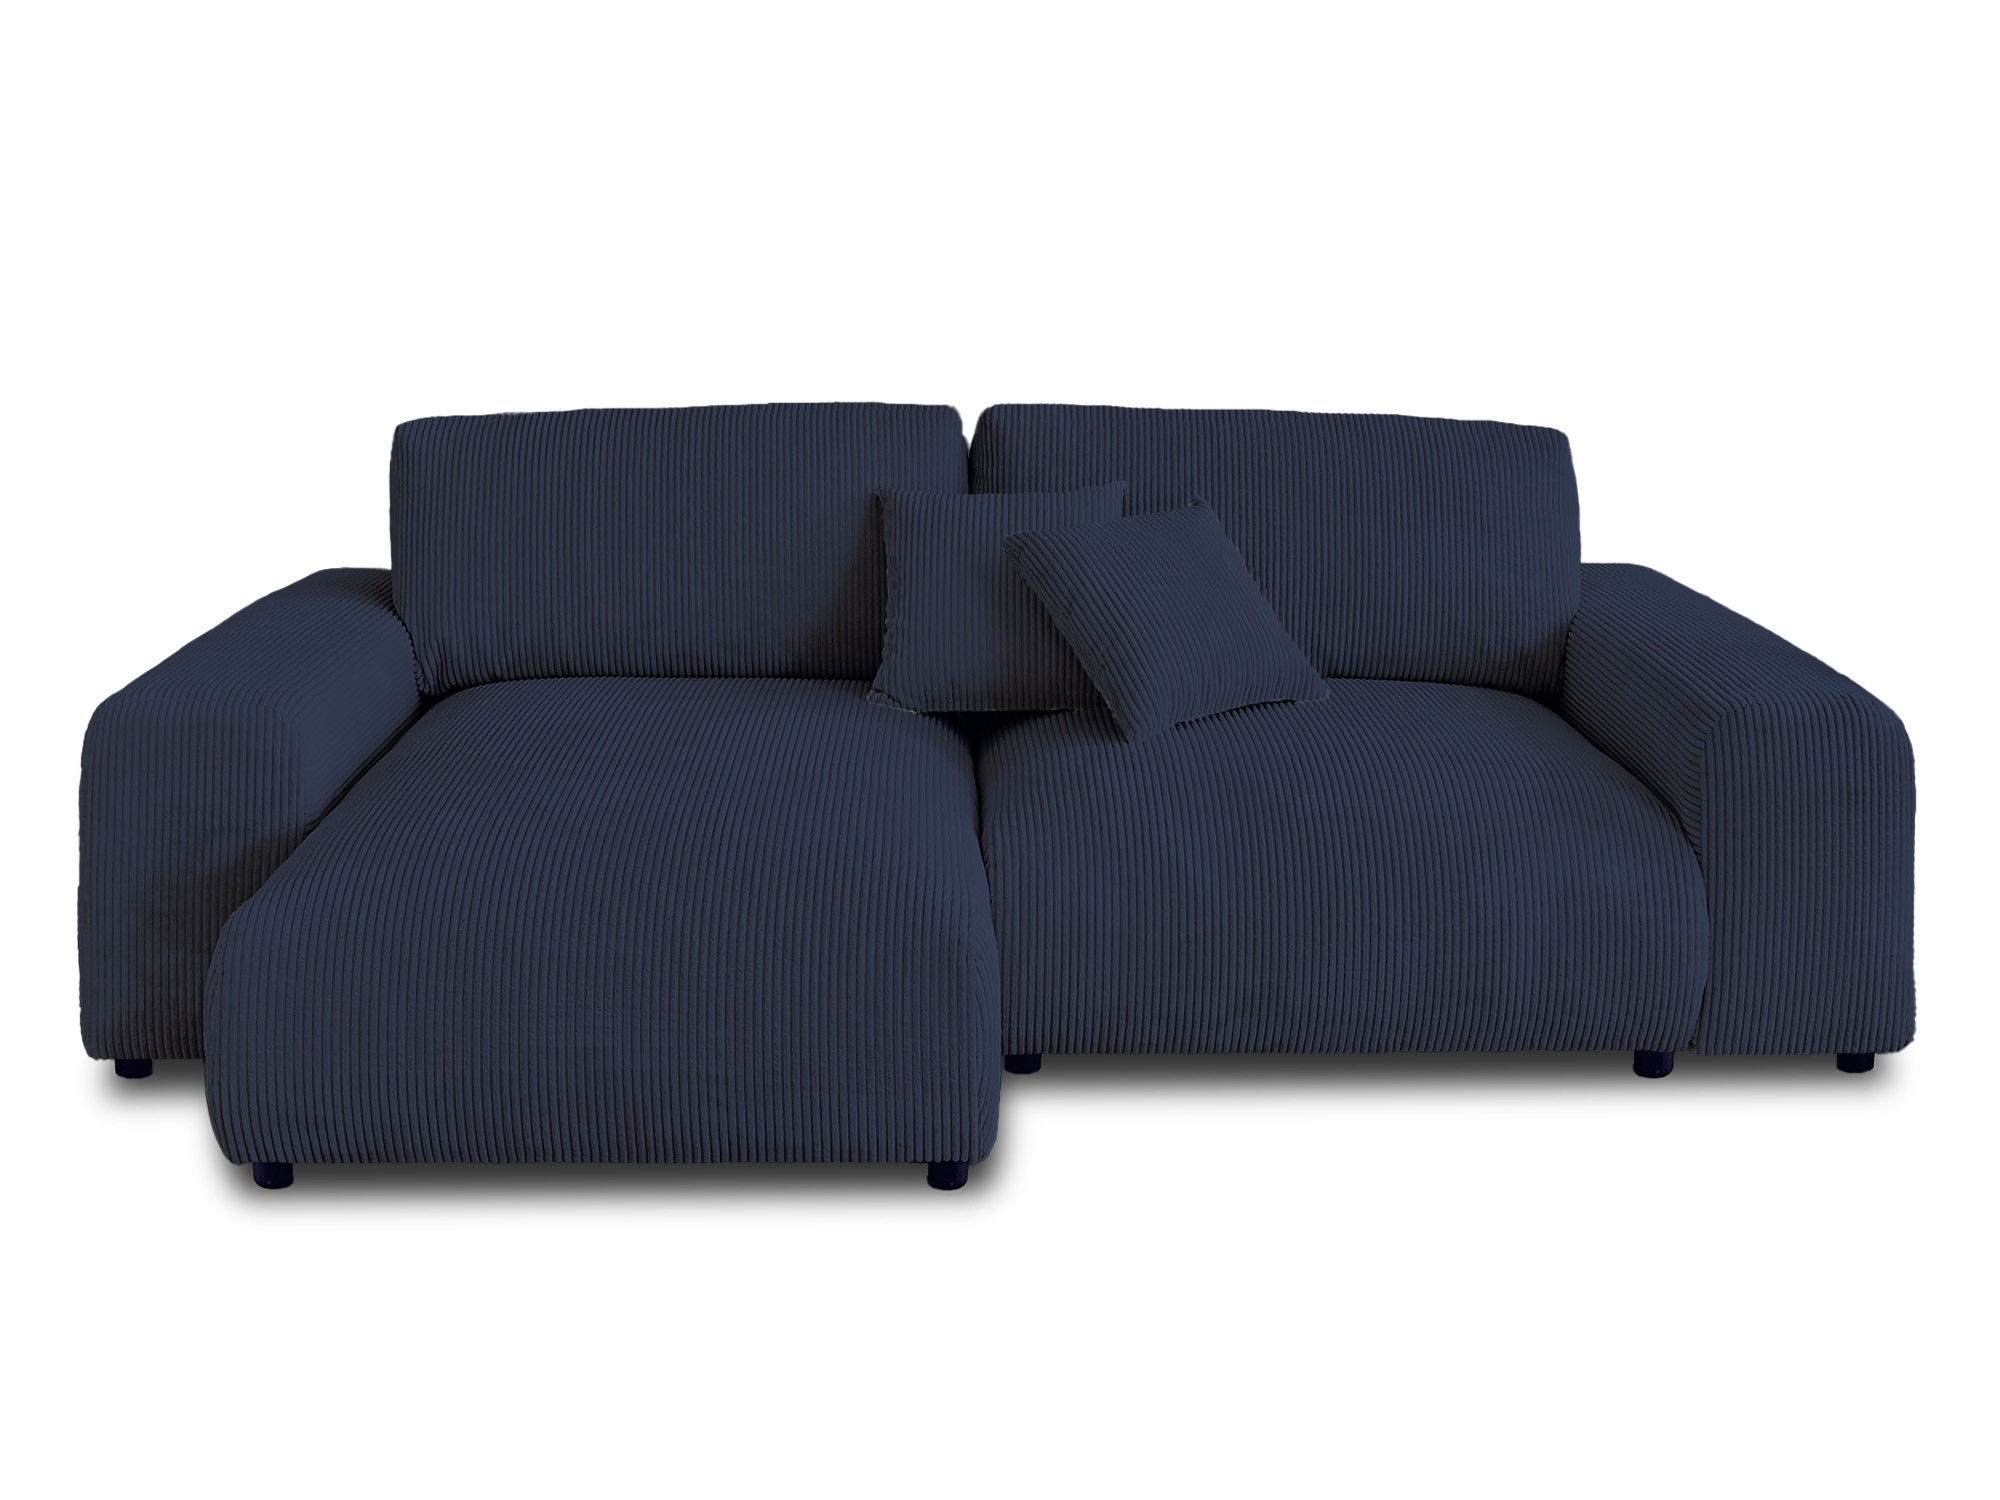 Canapé d'angle 4 places Bleu Velours Design Confort